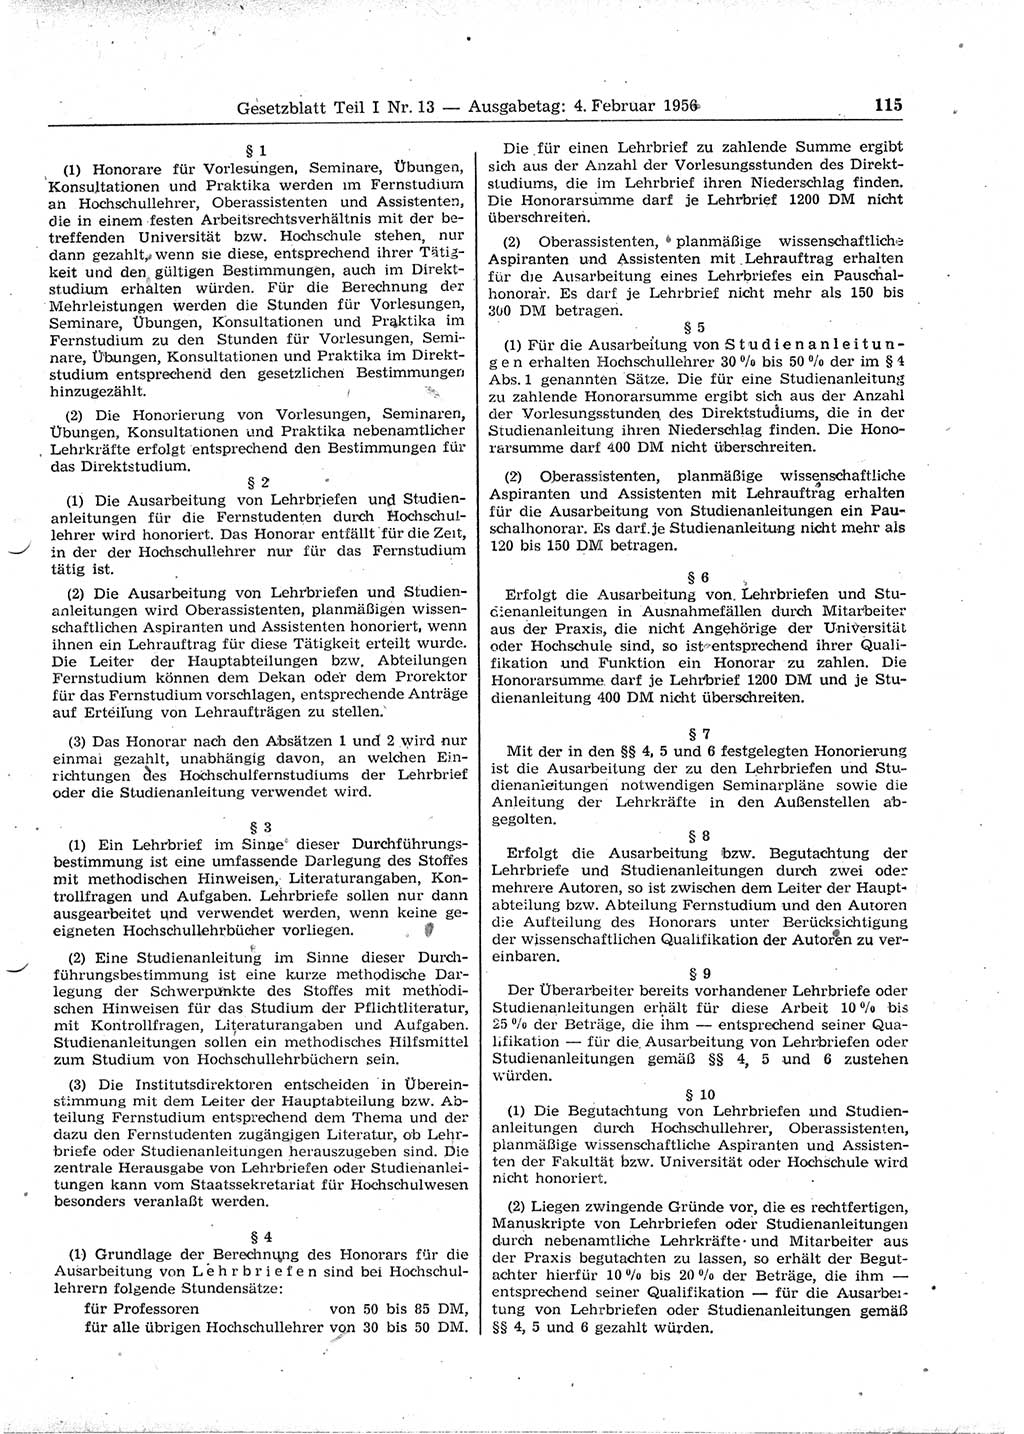 Gesetzblatt (GBl.) der Deutschen Demokratischen Republik (DDR) Teil Ⅰ 1956, Seite 115 (GBl. DDR Ⅰ 1956, S. 115)